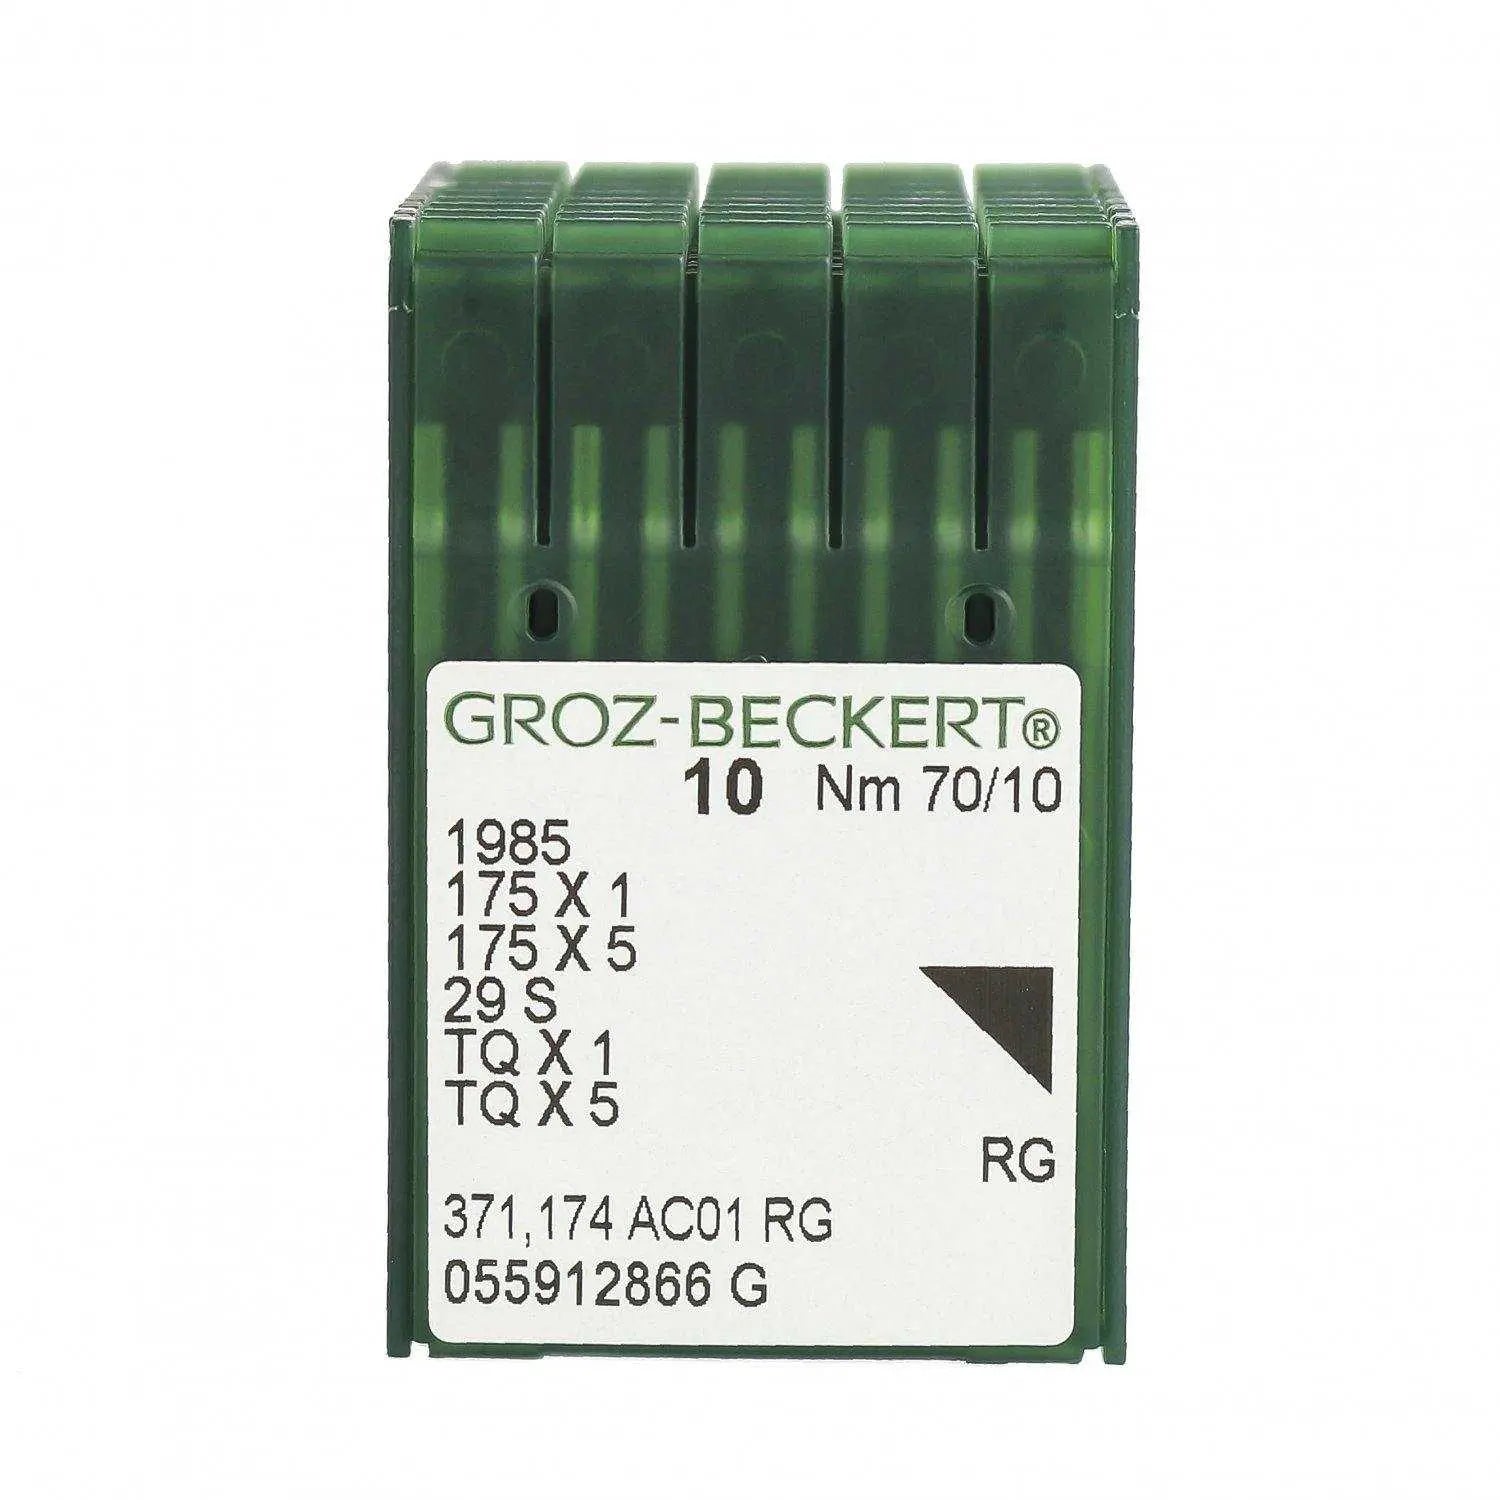 Ace TQx1 Groz-Beckert